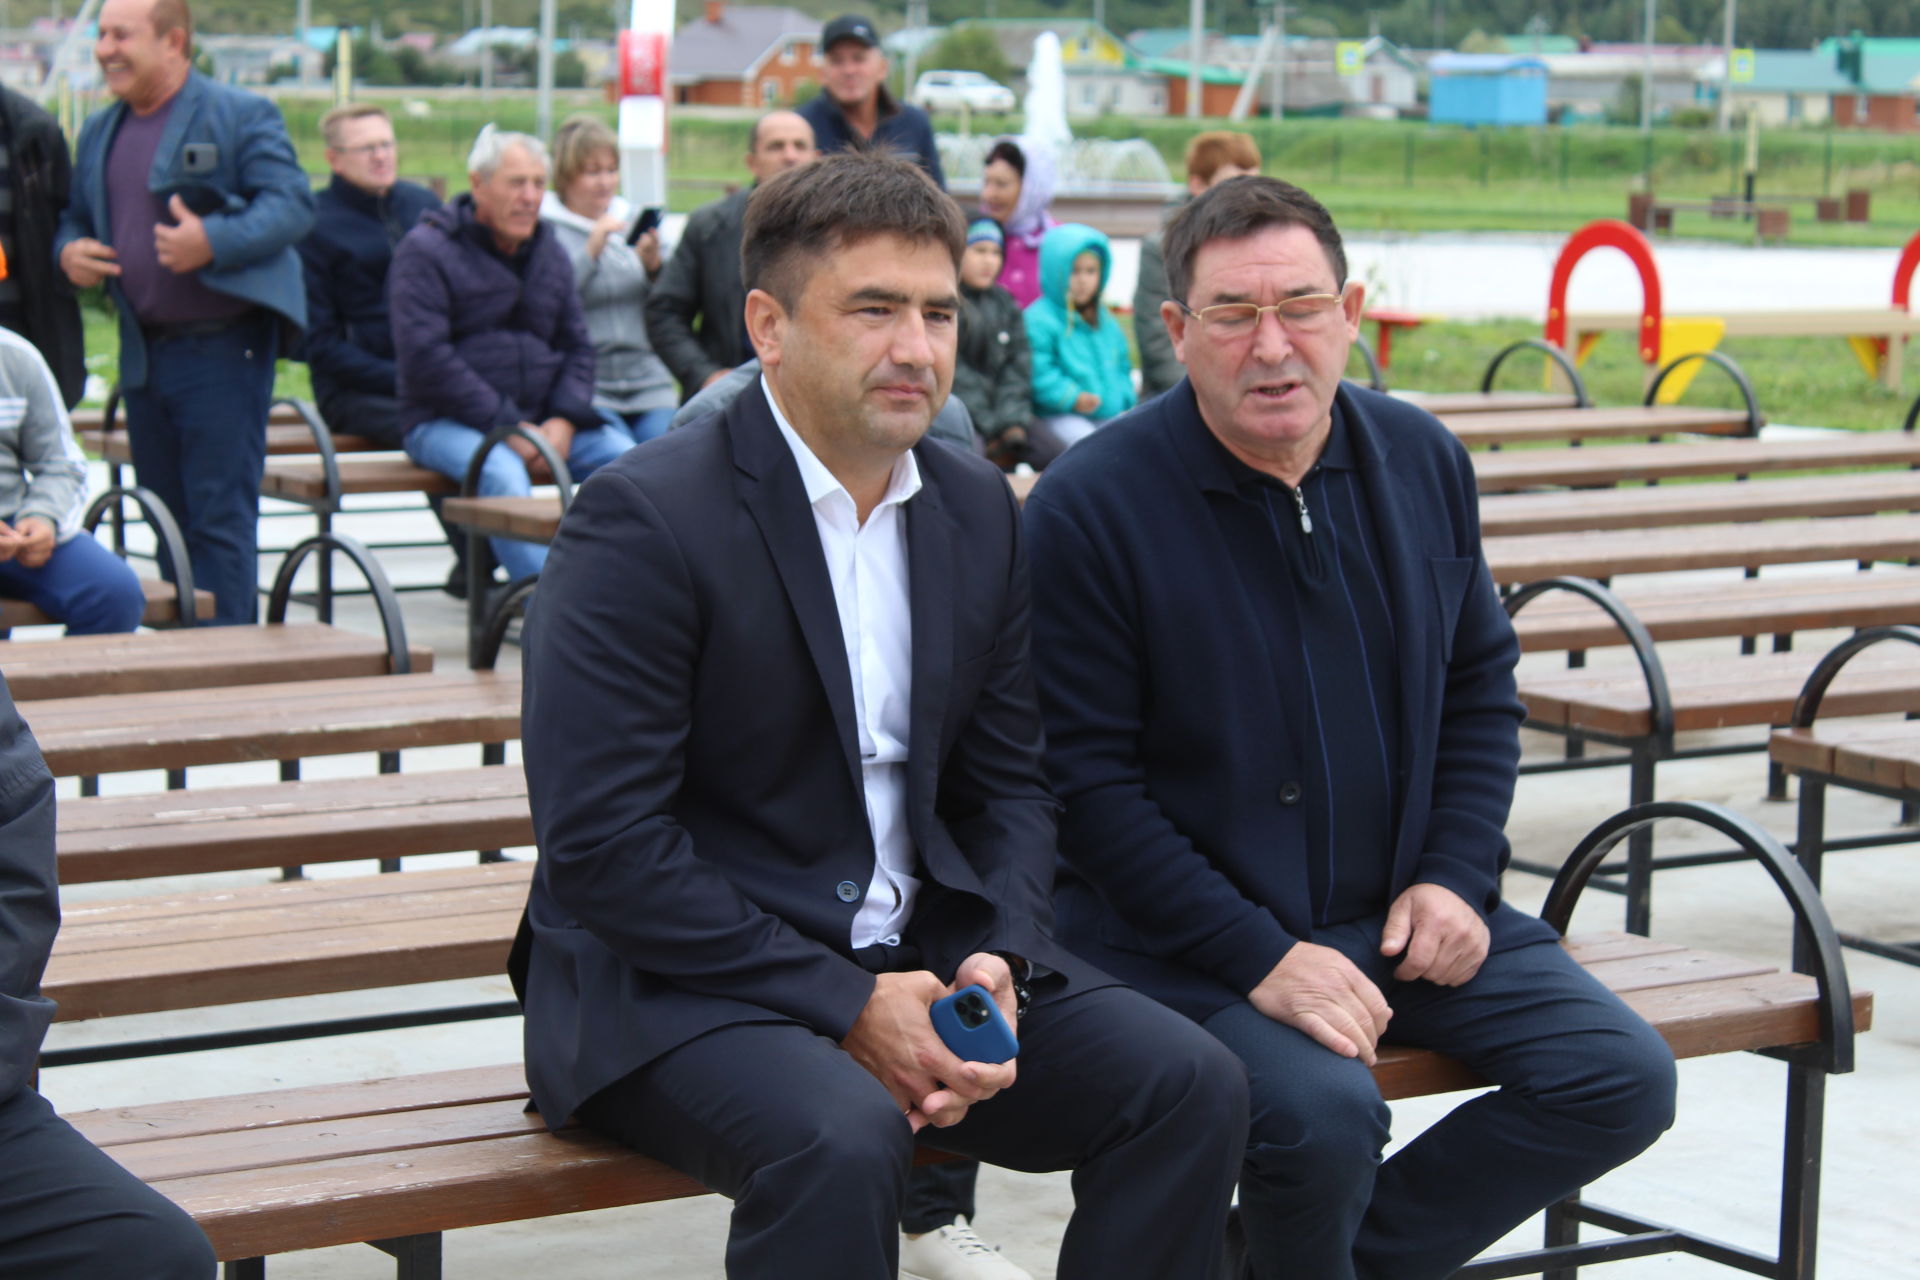 Салават Фатхутдинов ввел мяч в игру на новой спортплощадке и спел легендарную песню